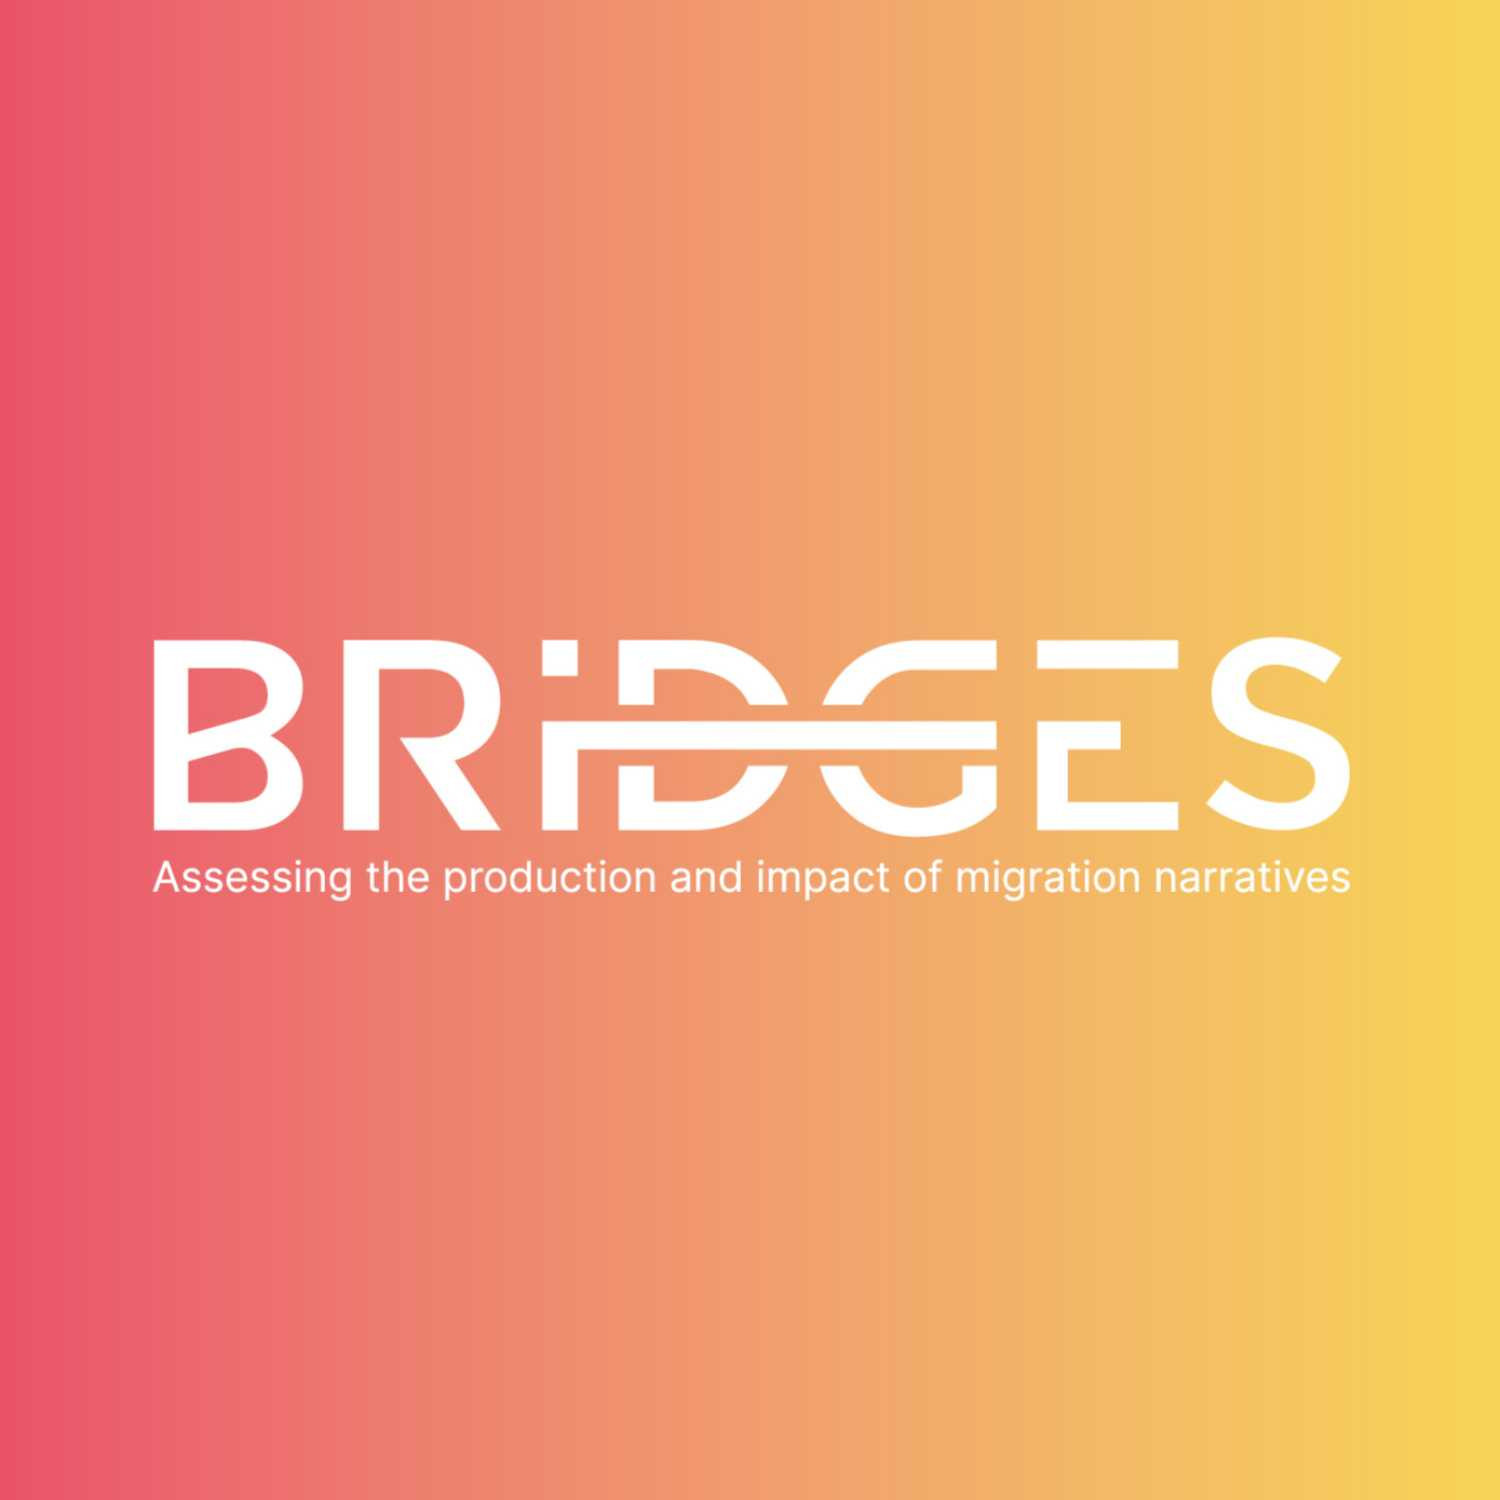 BRIDGES Le projet BRIDGES et le traitement médiatique des questions de migrations